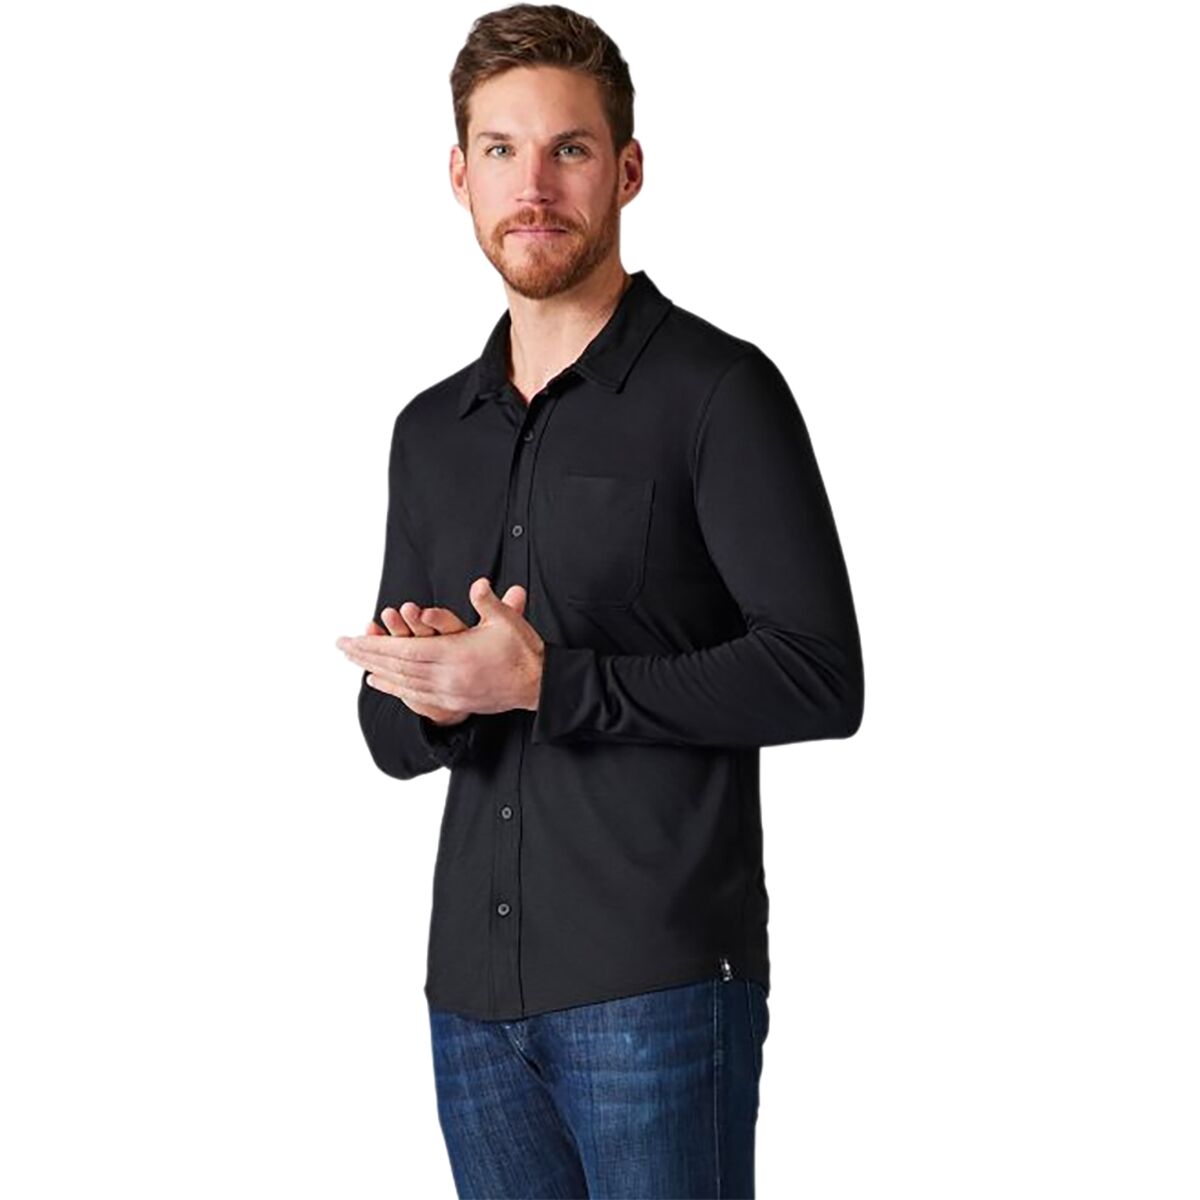 Smartwool Merino Sport 150 Long-Sleeve Button-Up Shirt - Men's